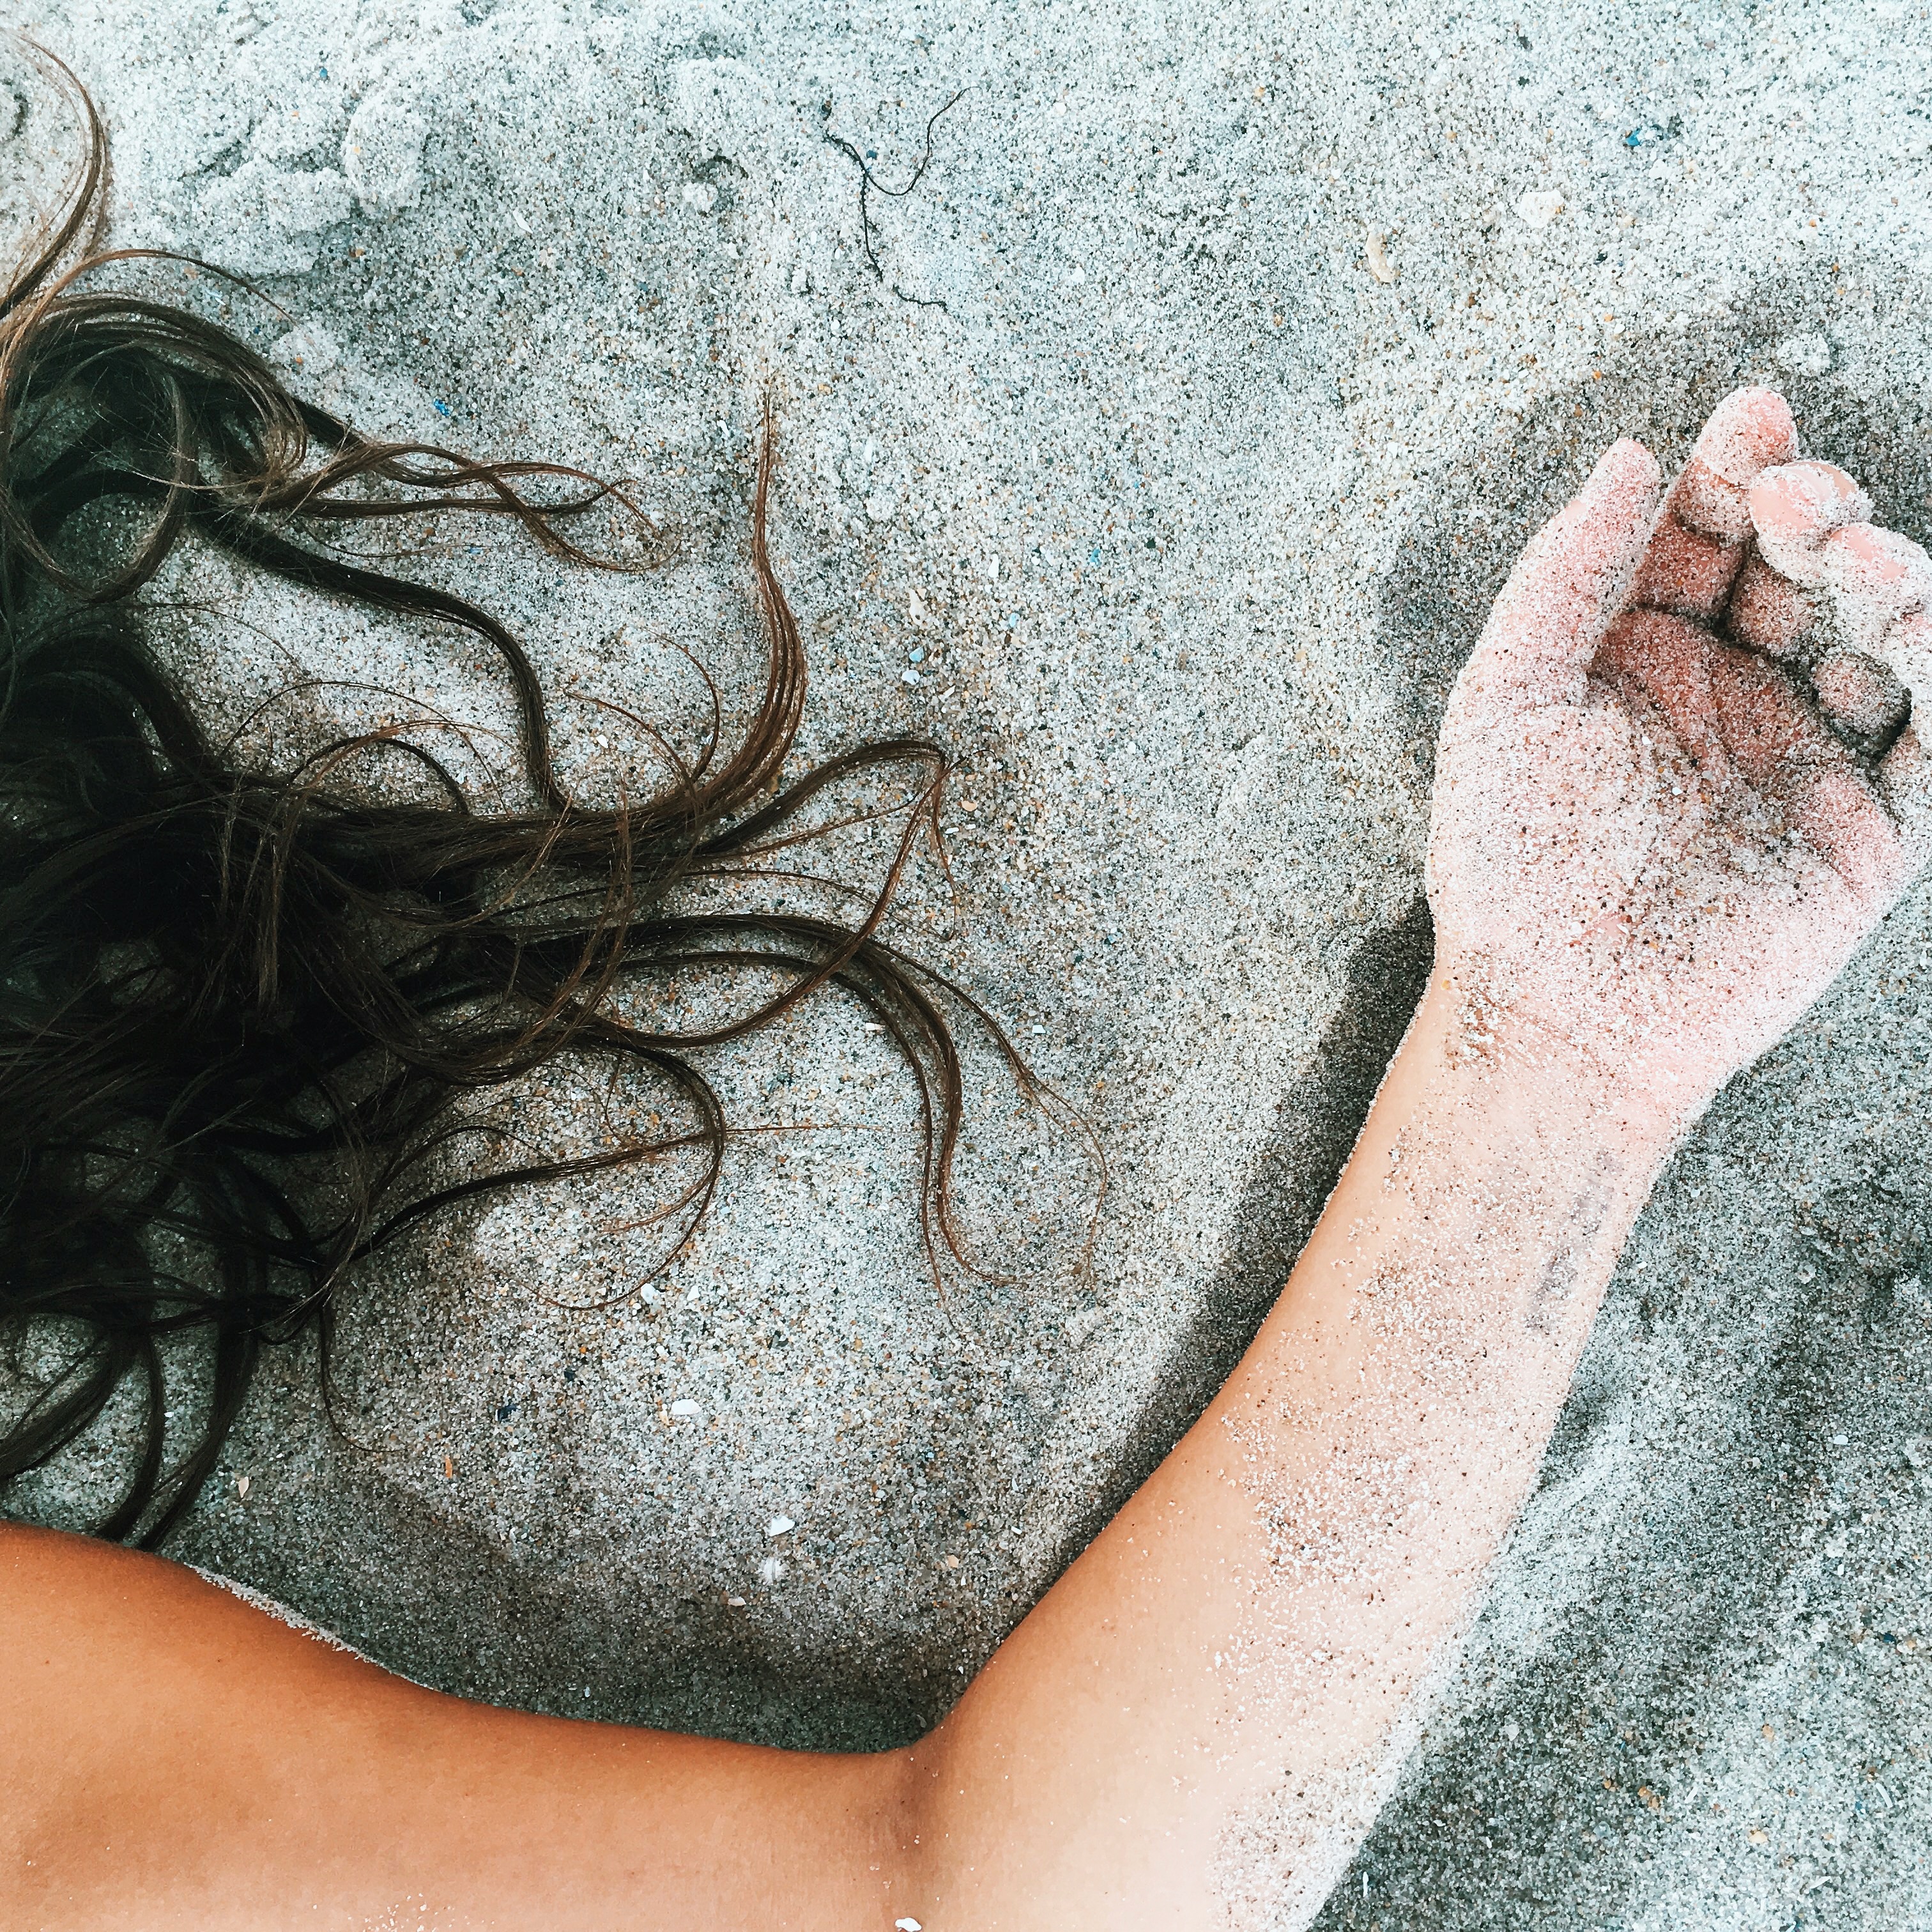 briseida orozco share our nude beach tumblr photos